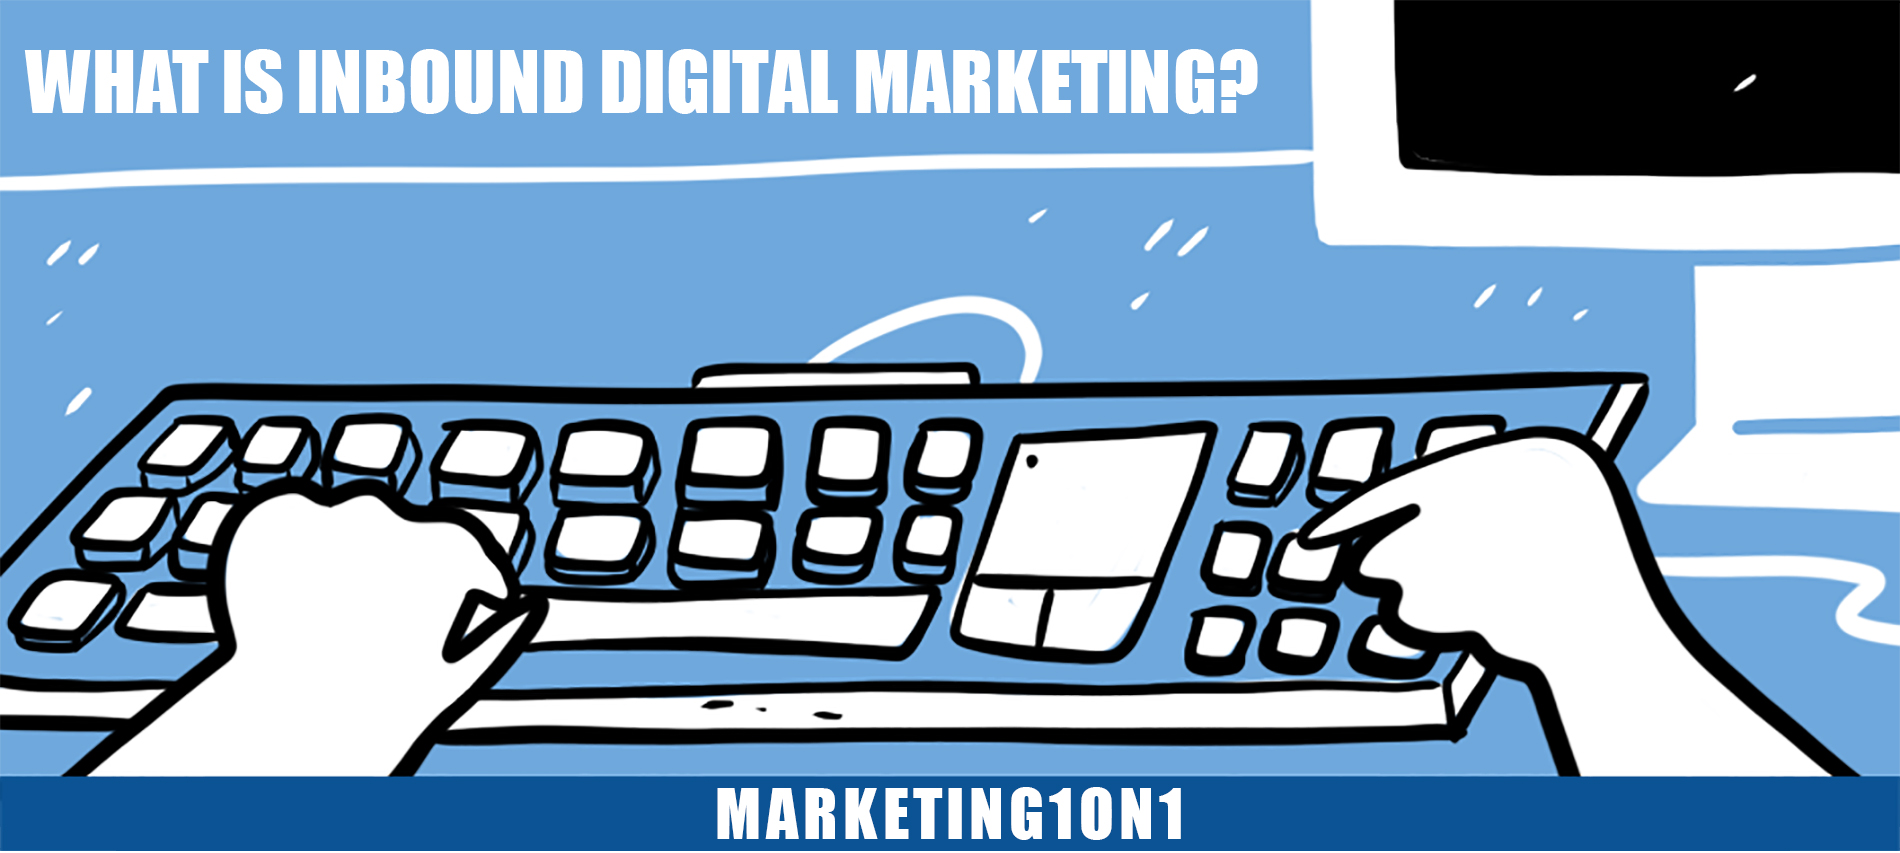 What is inbound digital marketing?